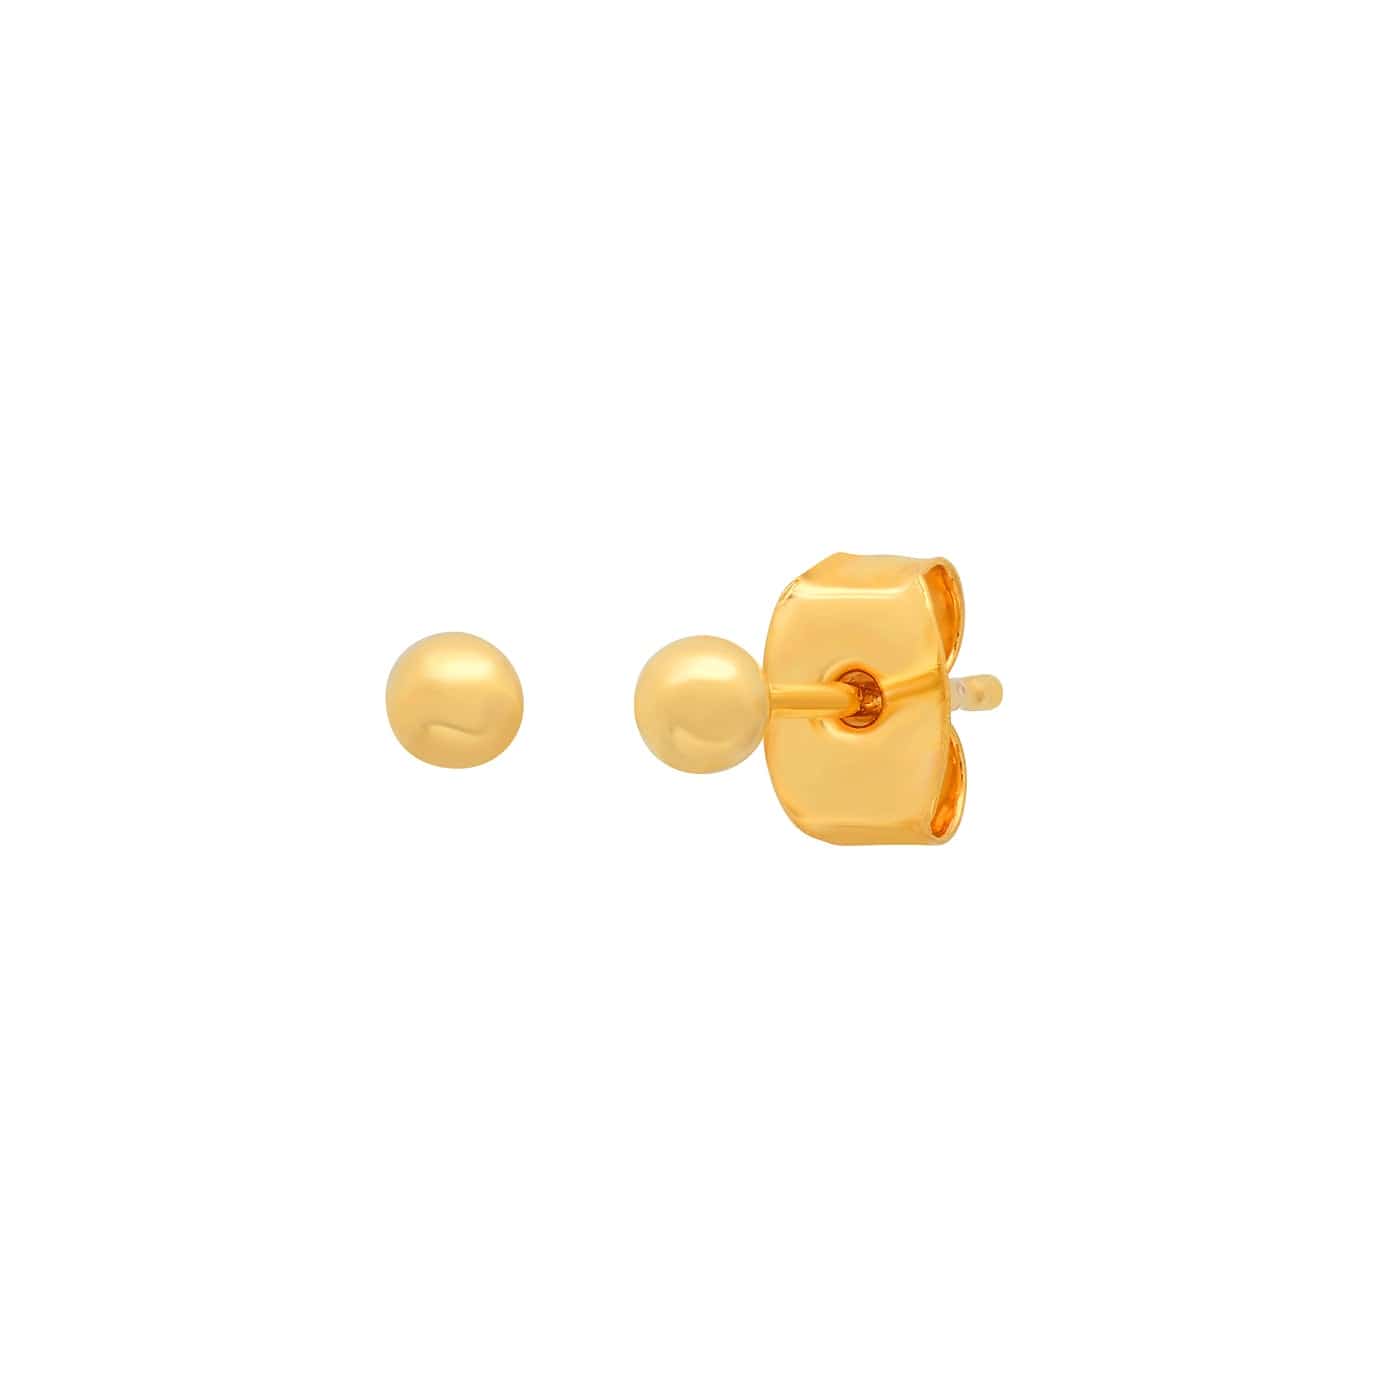 TAI JEWELRY Earrings 14k Gold 14k Sphere Studs | 2.5mm